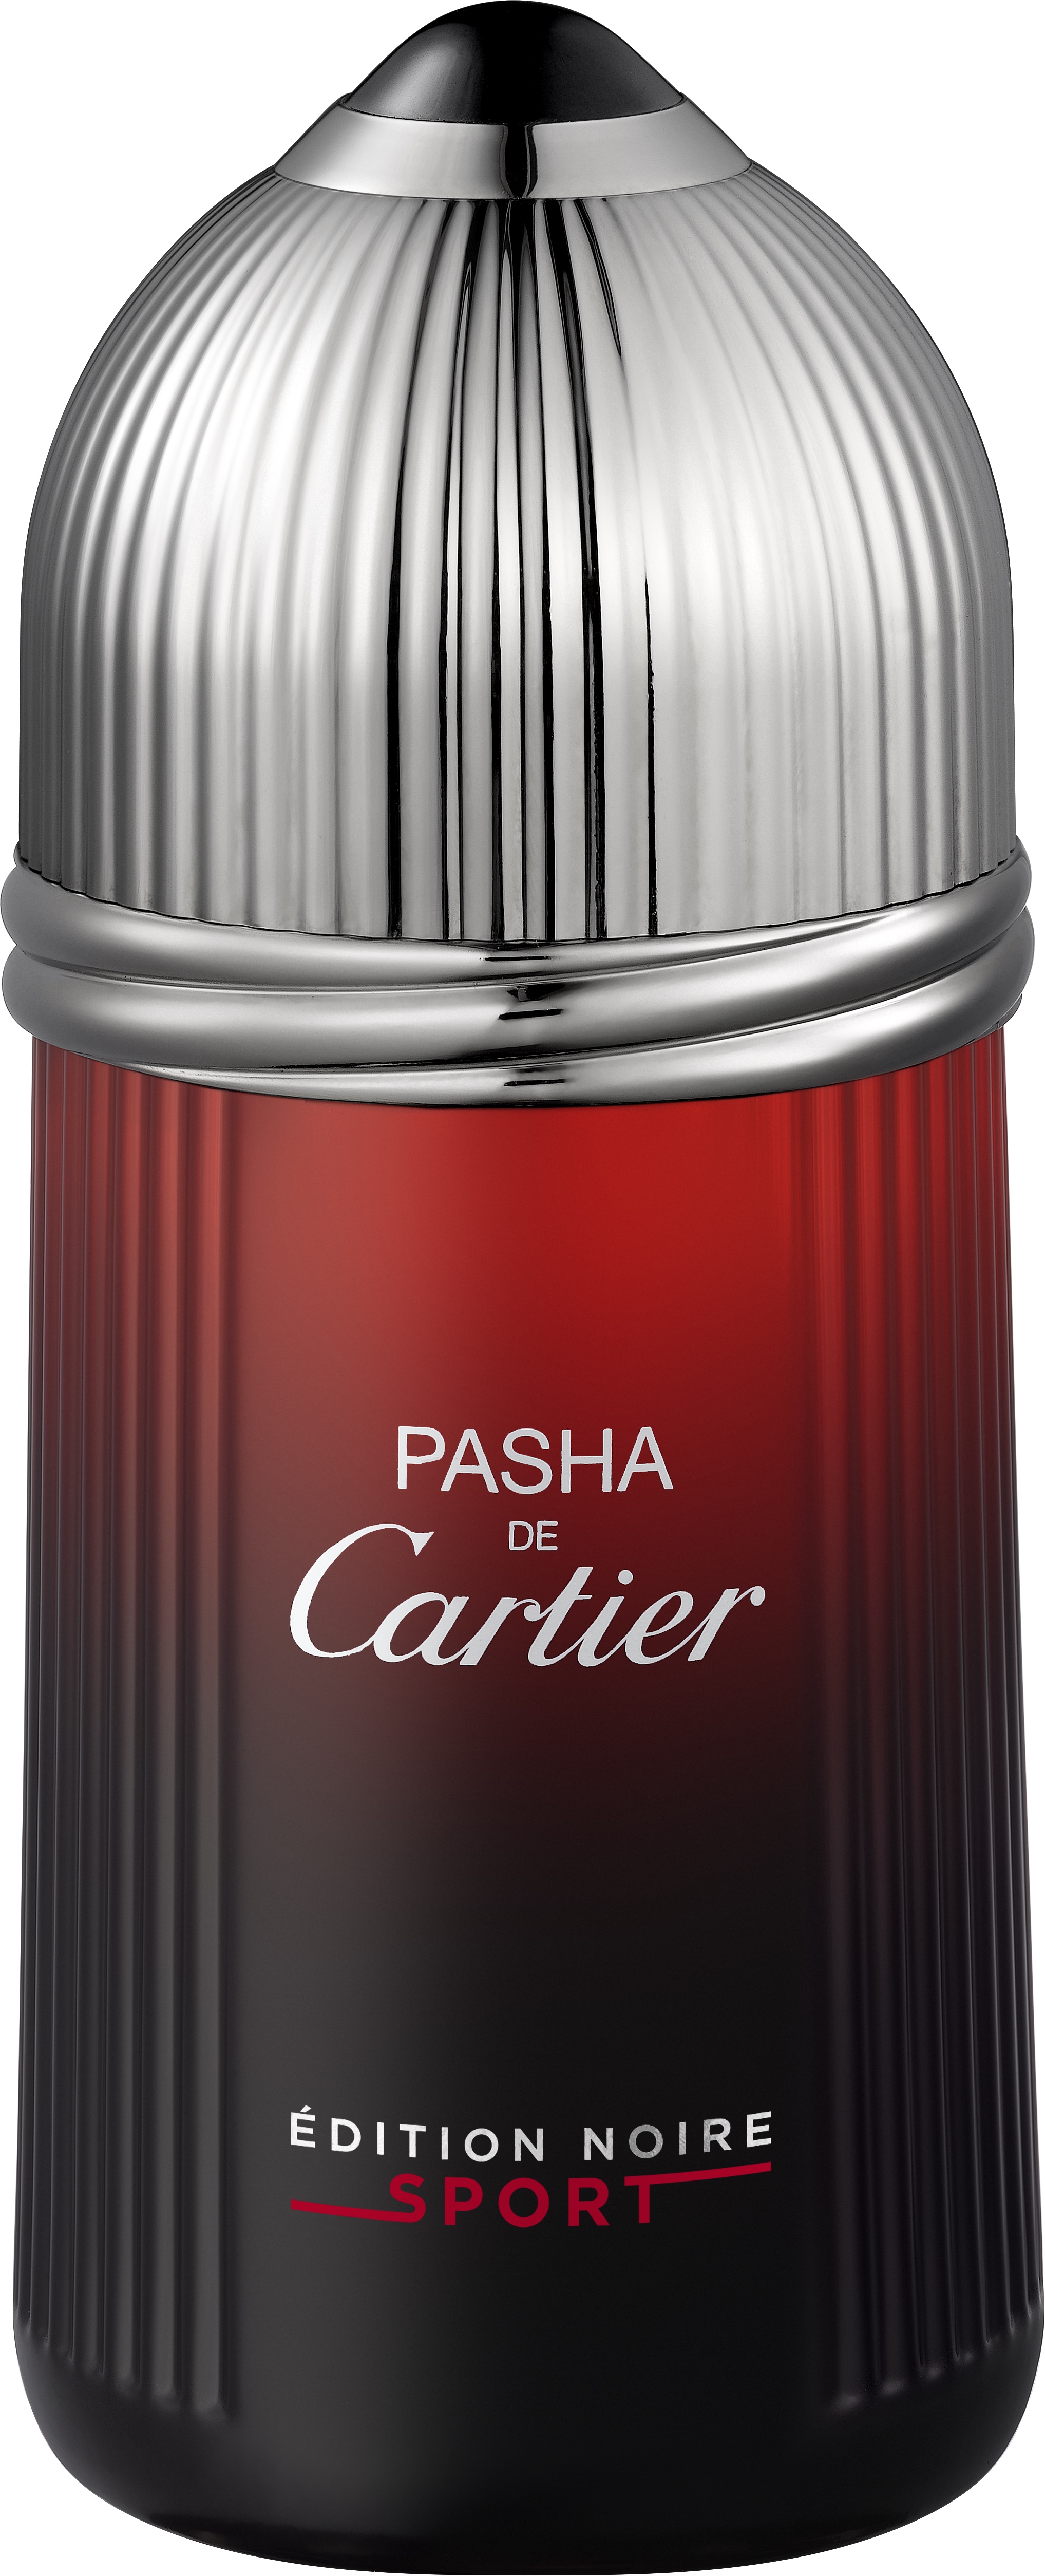 Pasha de Cartier Edition Noire Sport, $110